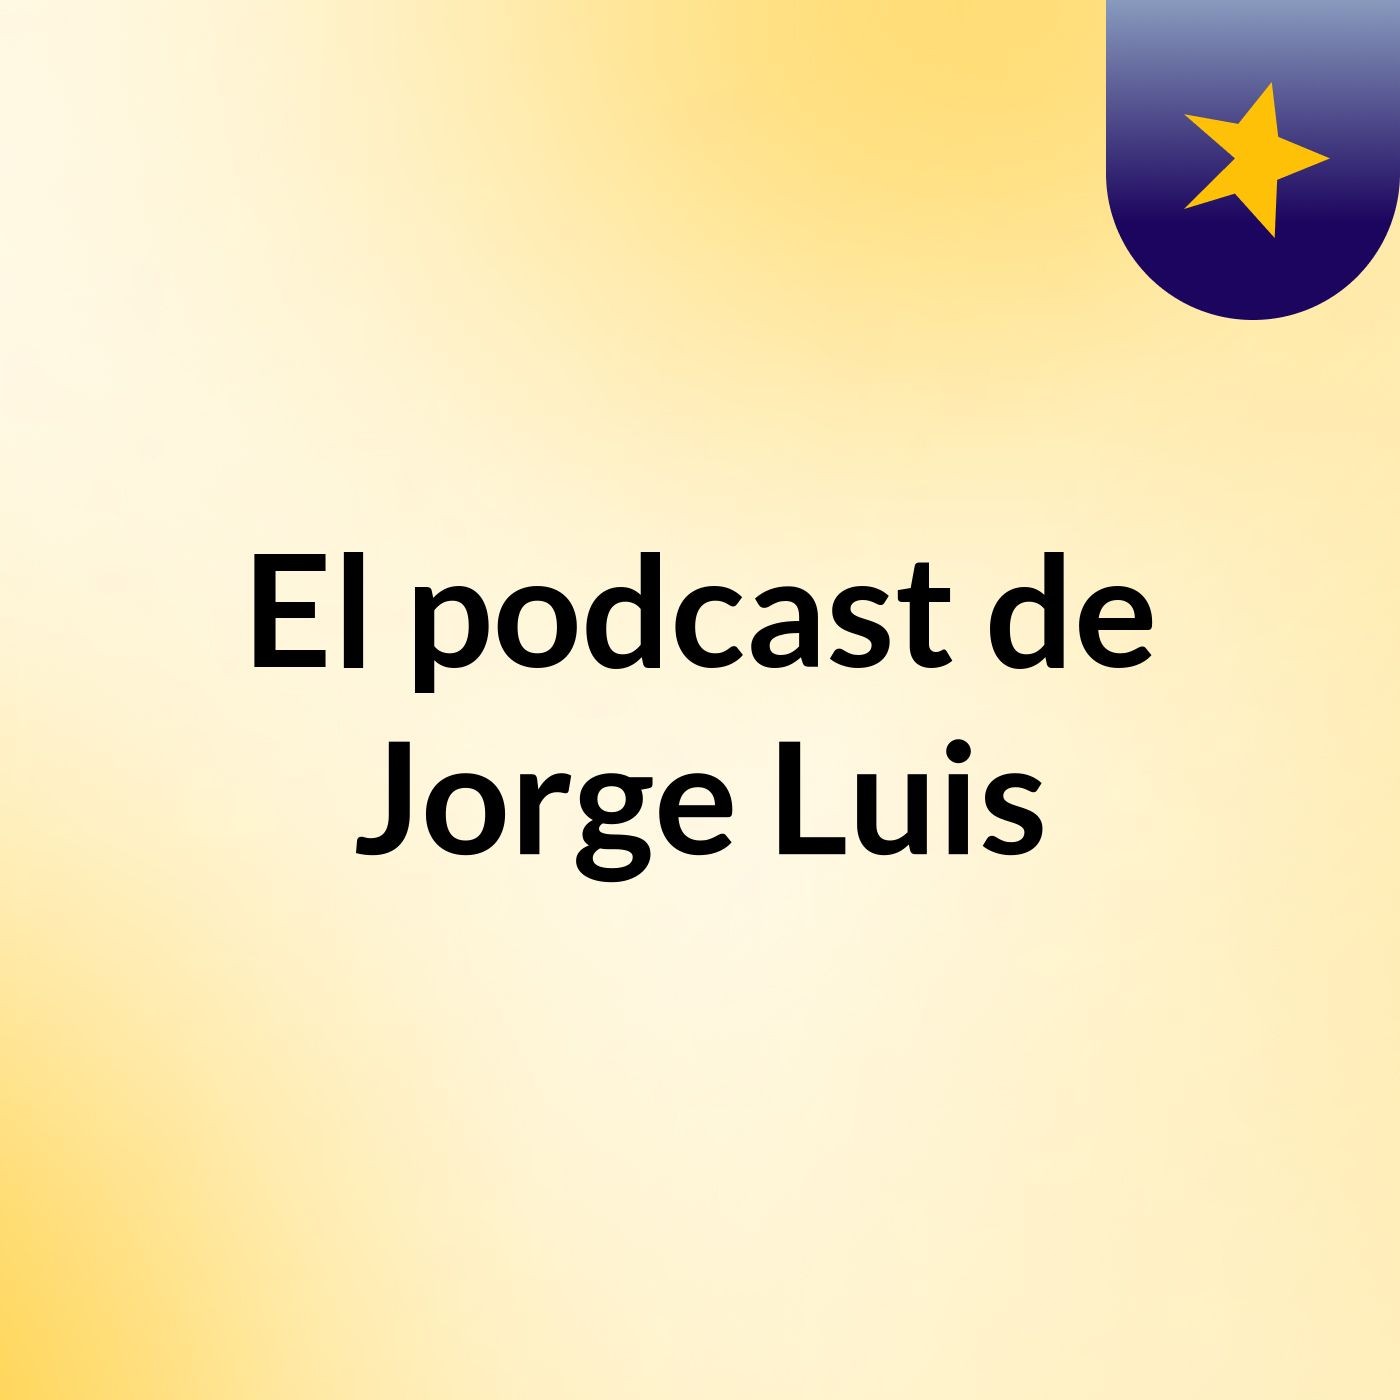 El podcast de Jorge Luis